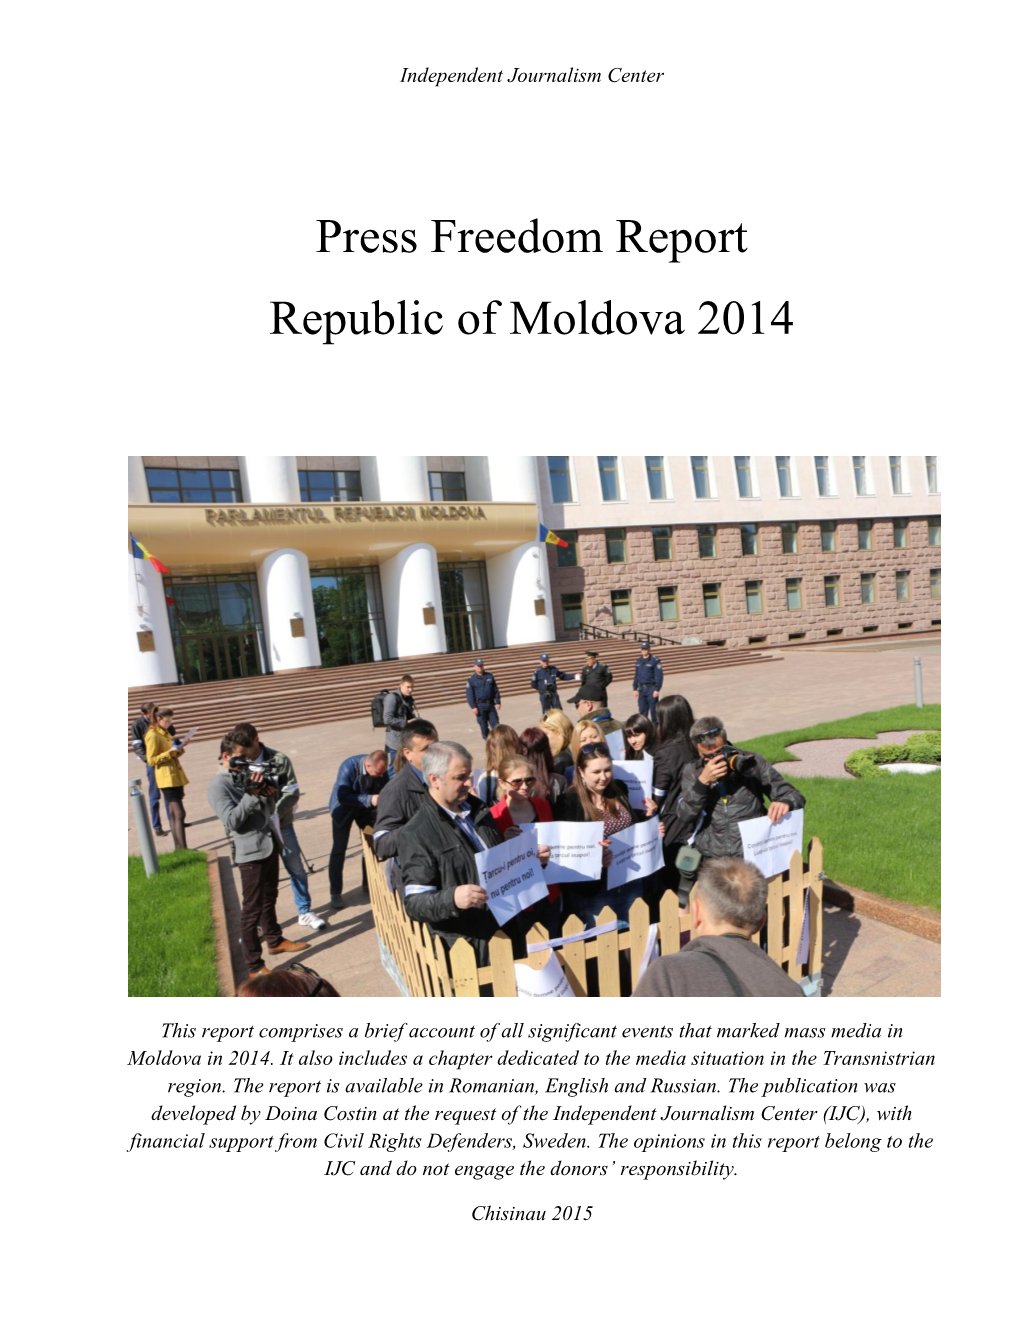 Press Freedom Report Republic of Moldova 2014